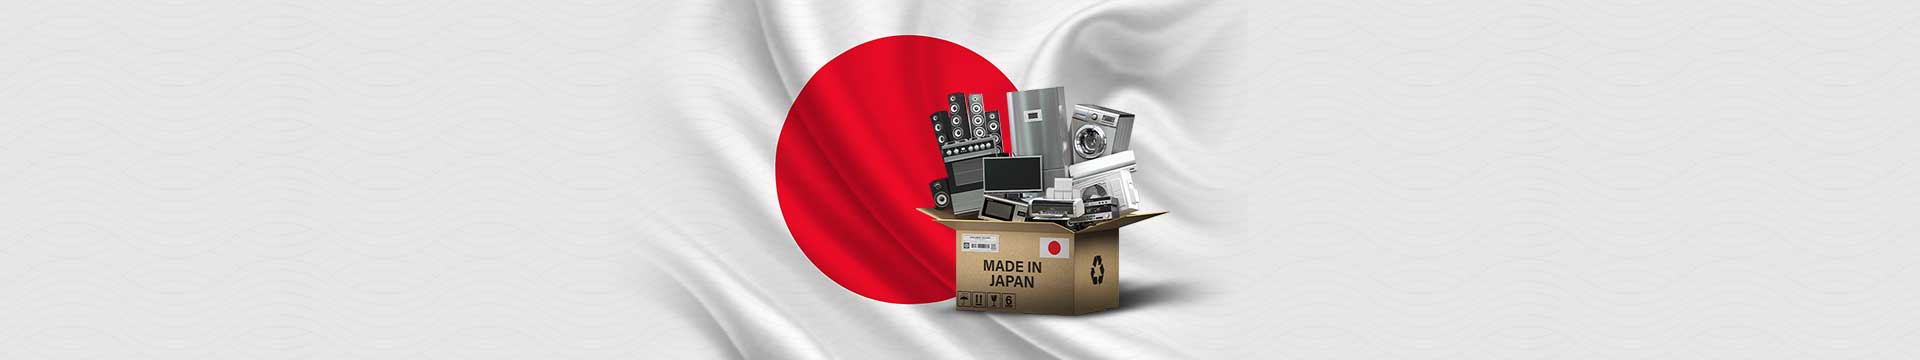 ไอเดียการตลาดในญี่ปุ่น ที่ประสบความสำเร็จอย่างร้อนแรงในปีที่ผ่านมา